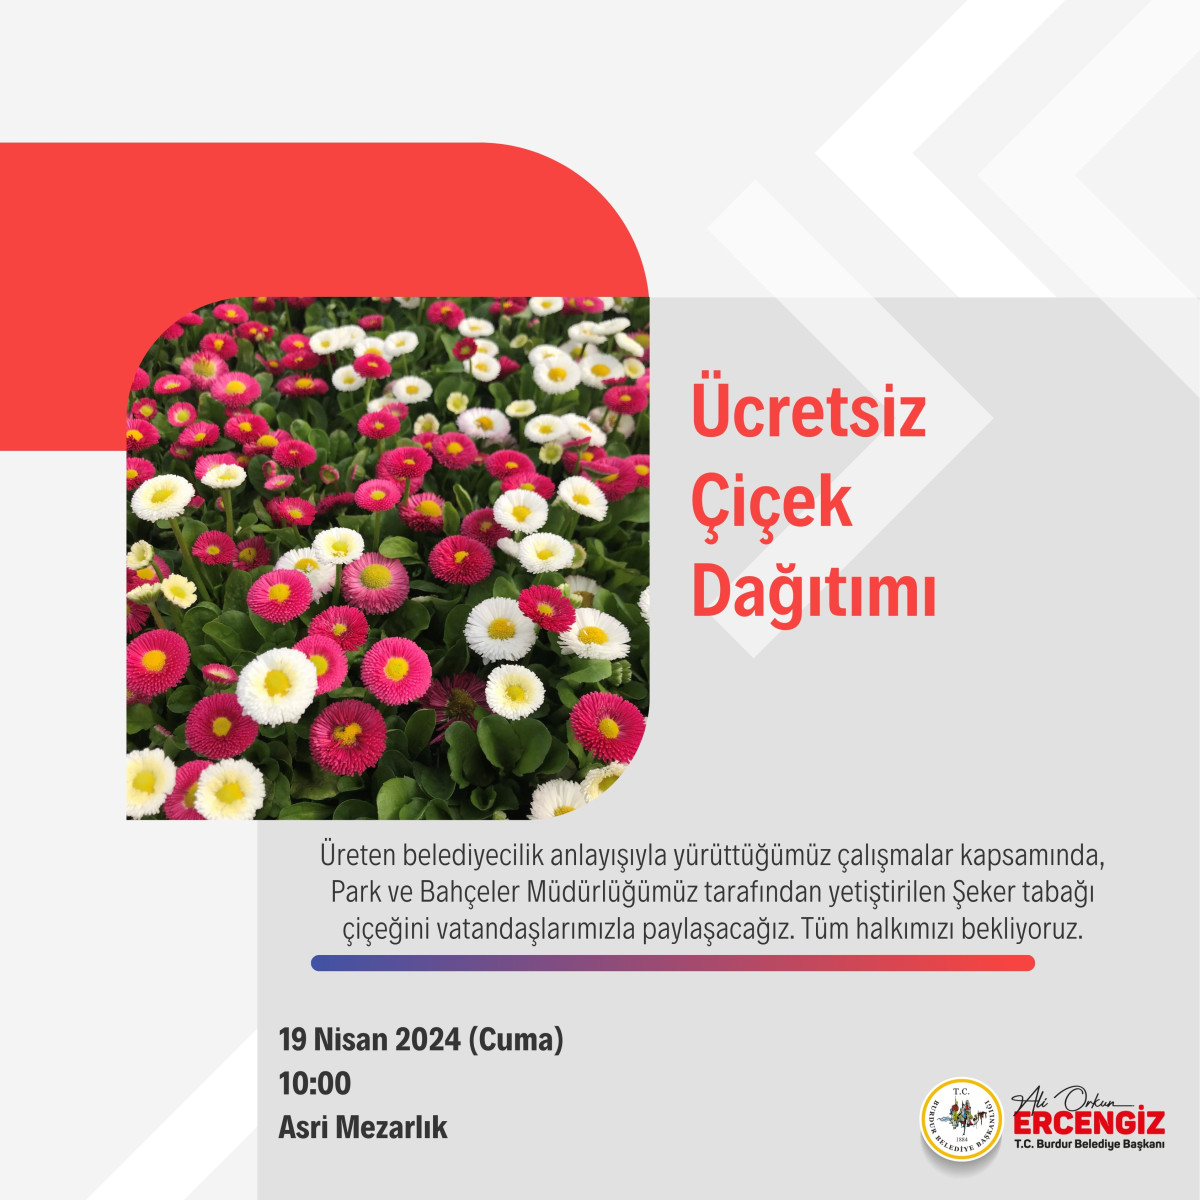 Burdur Belediyesi ürettiği çiçekleri, ücretsiz verecek